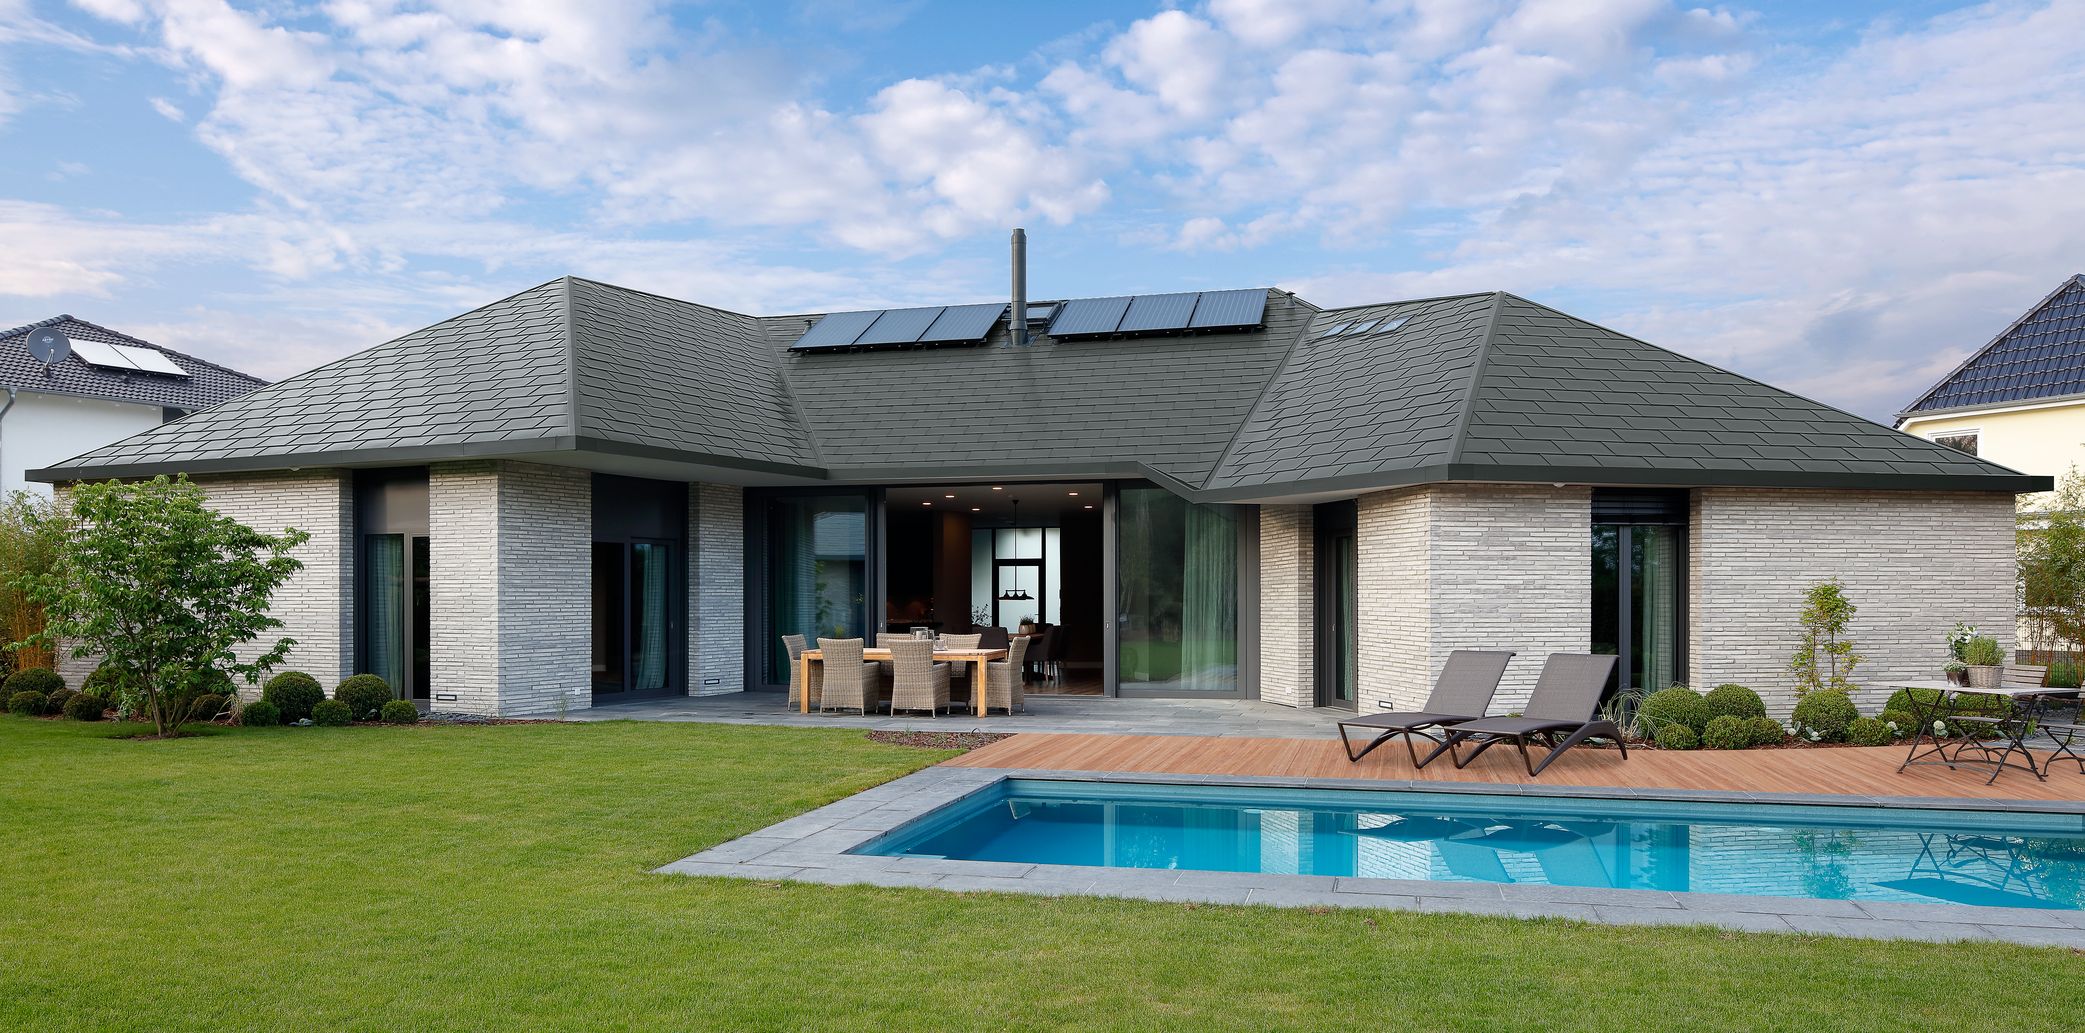 Maison individuelle avec toit zinc en bardeaux